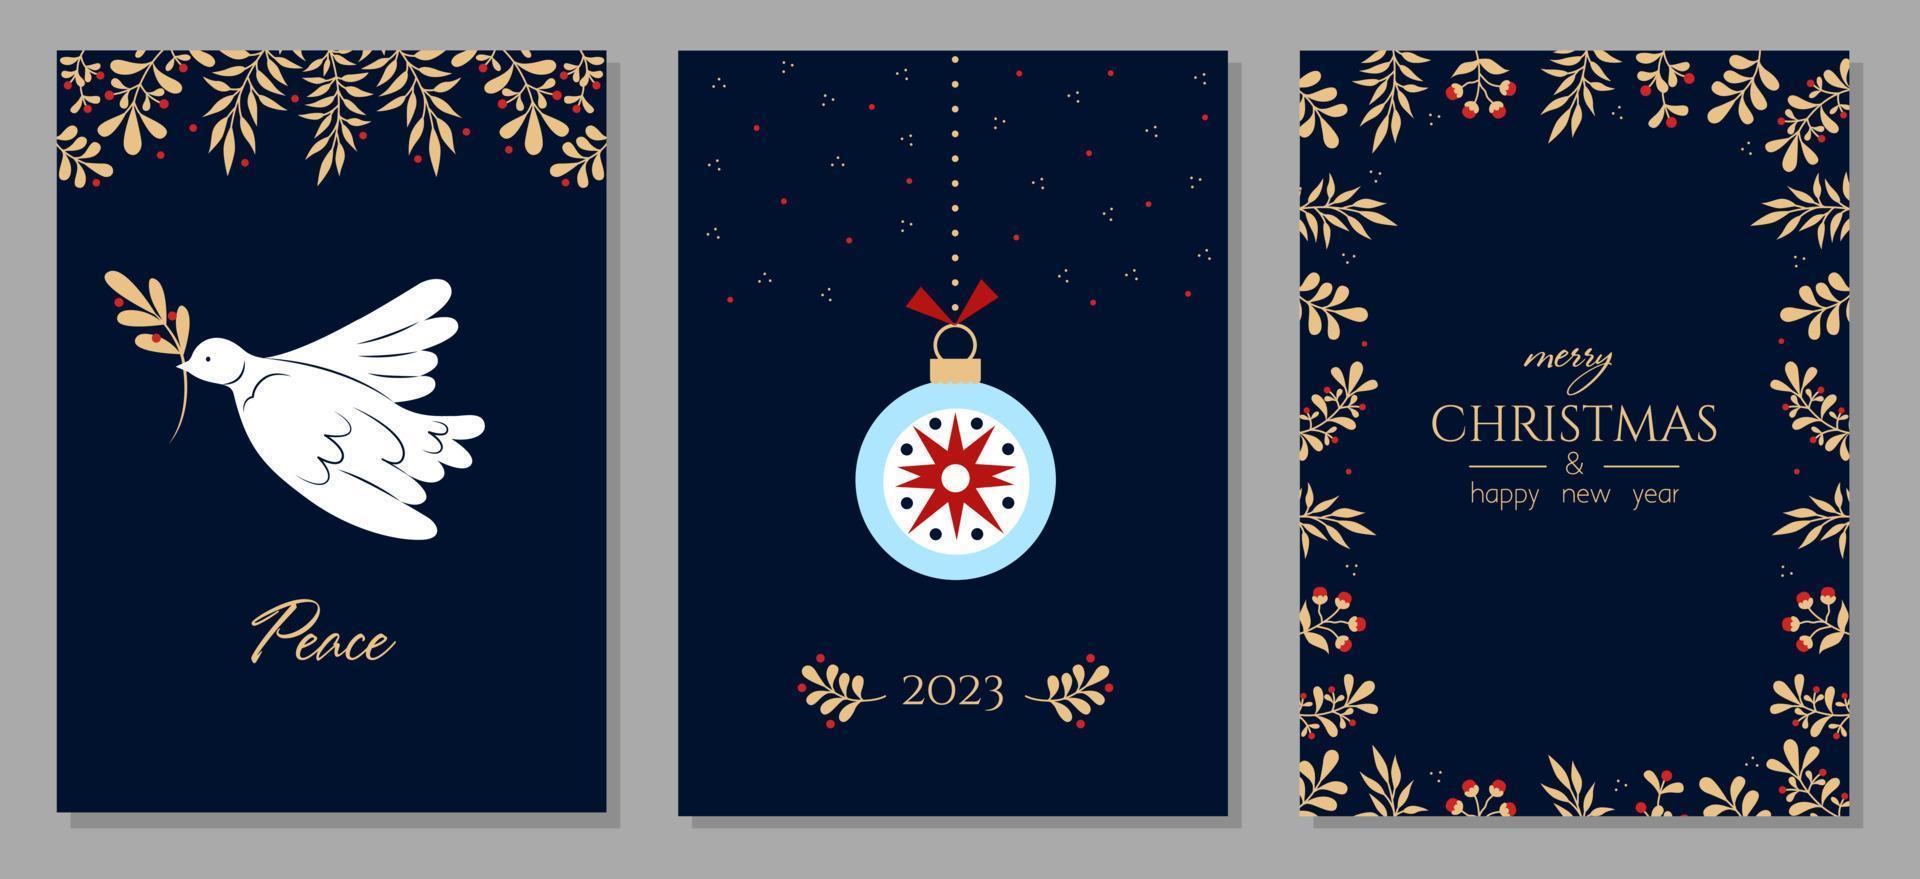 conjunto de tarjetas de felicitación de navidad y feliz año nuevo. plantillas artísticas universales creativas modernas con paloma, adorno floral y marcos. ilustración vectorial vector